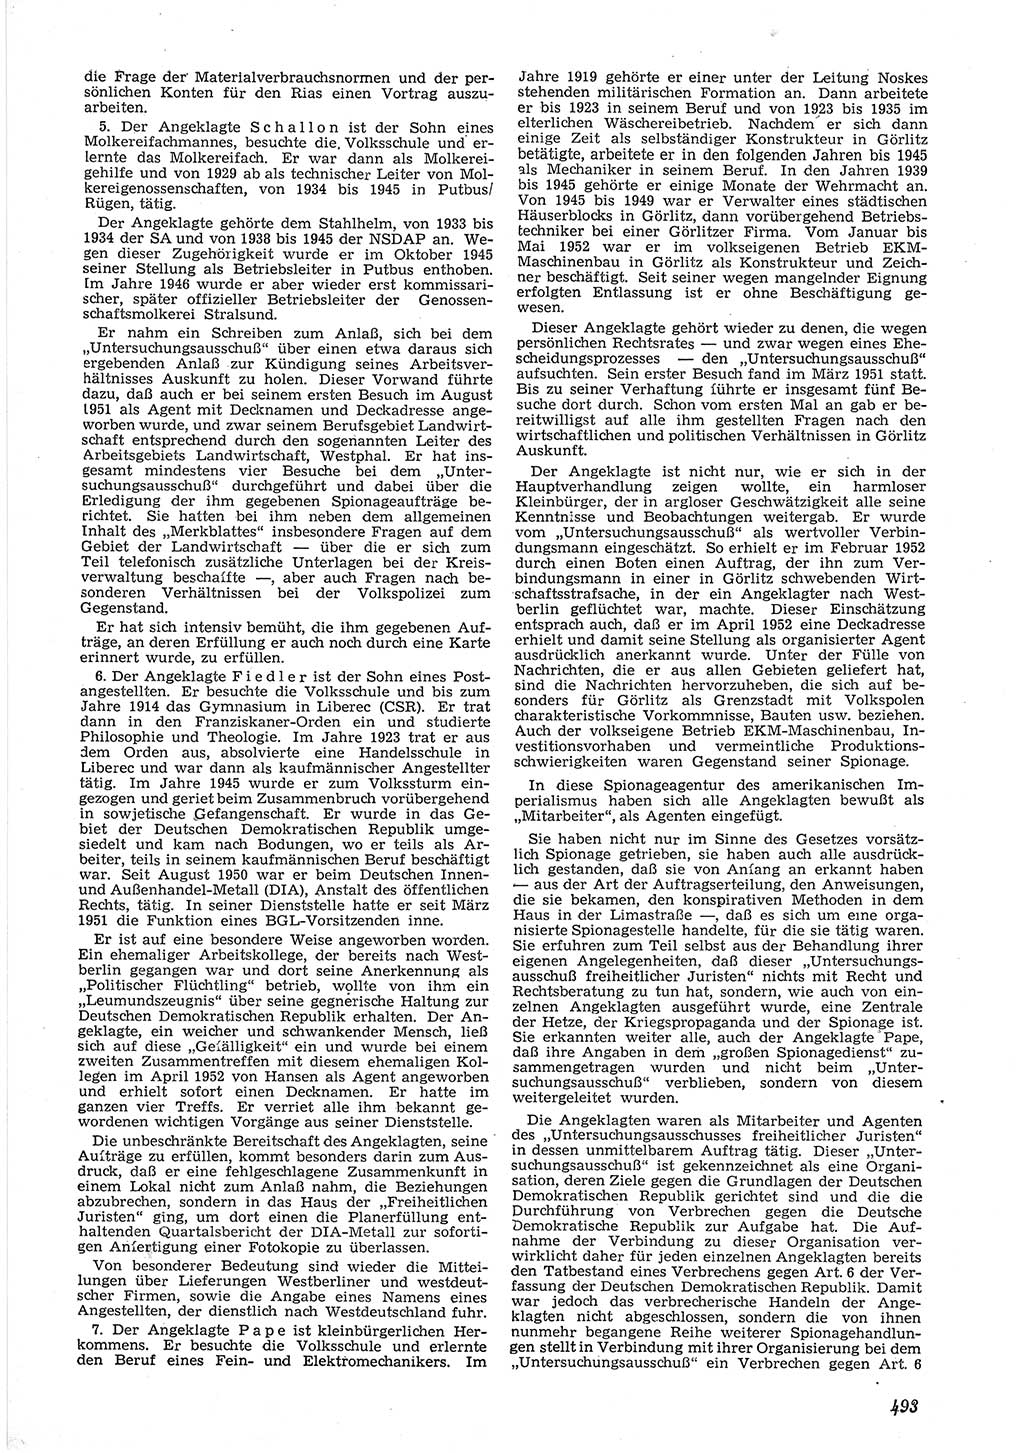 Neue Justiz (NJ), Zeitschrift für Recht und Rechtswissenschaft [Deutsche Demokratische Republik (DDR)], 6. Jahrgang 1952, Seite 493 (NJ DDR 1952, S. 493)